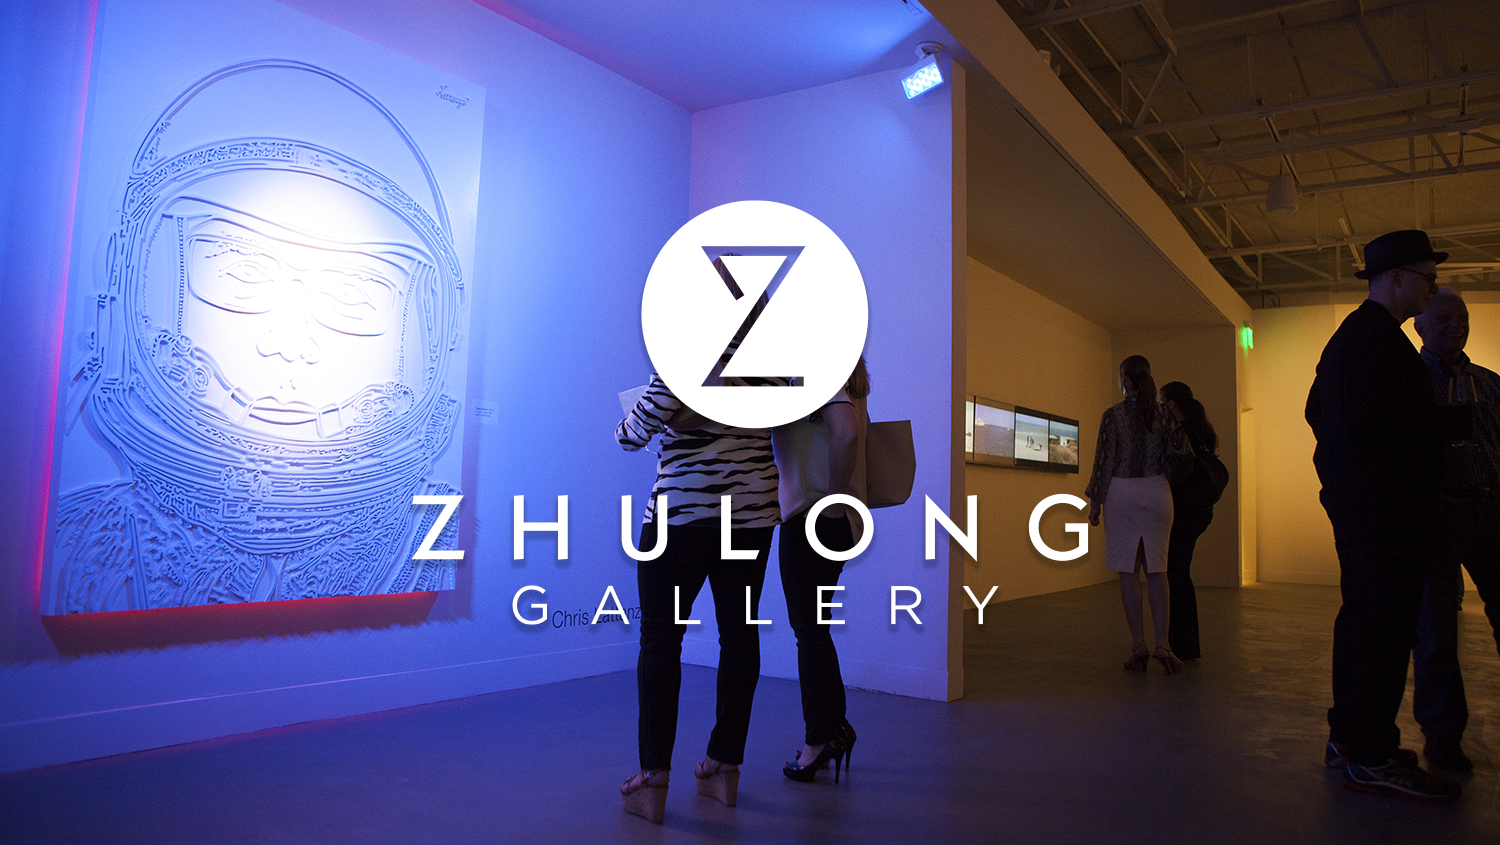 Zhulong Gallery